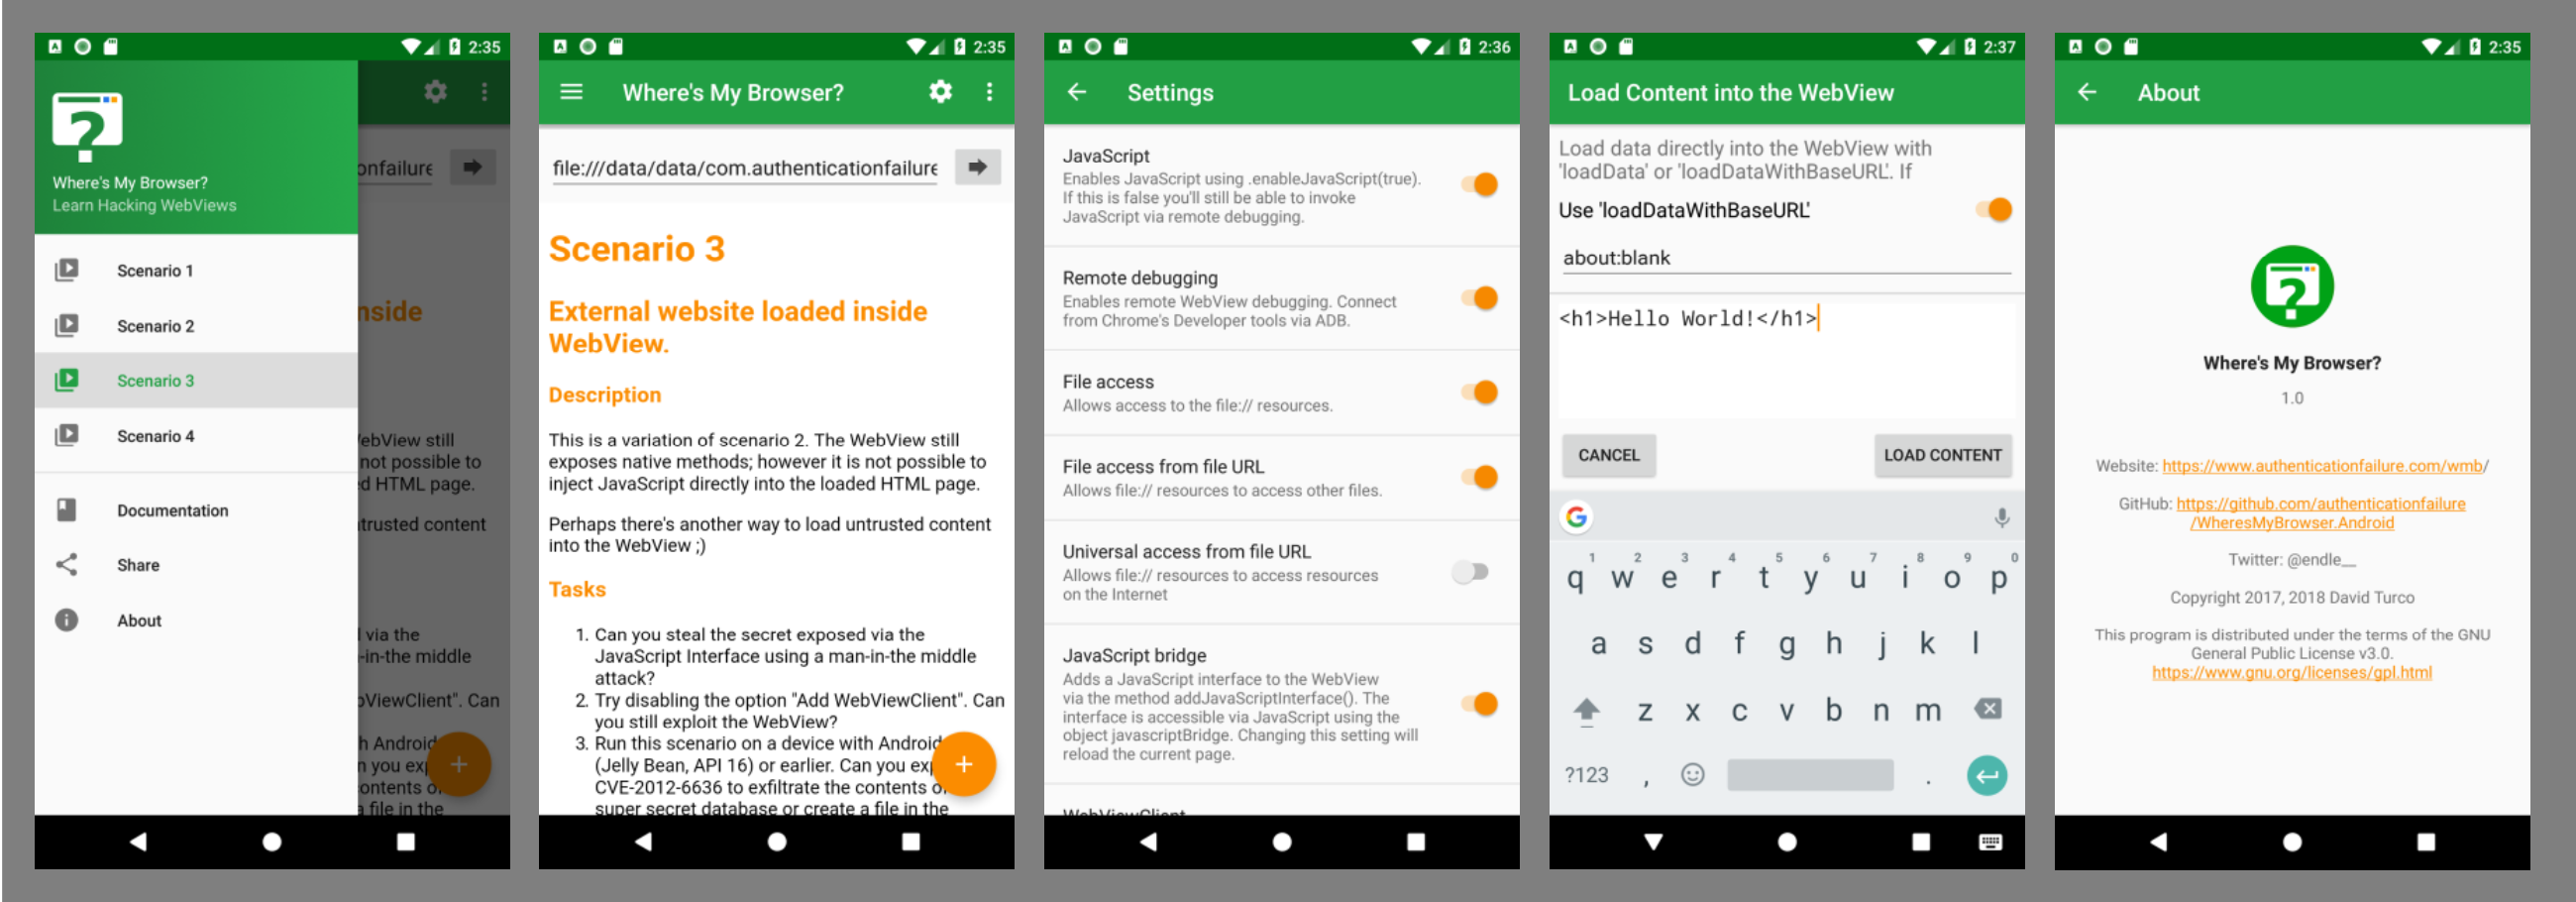 Android Screenshots